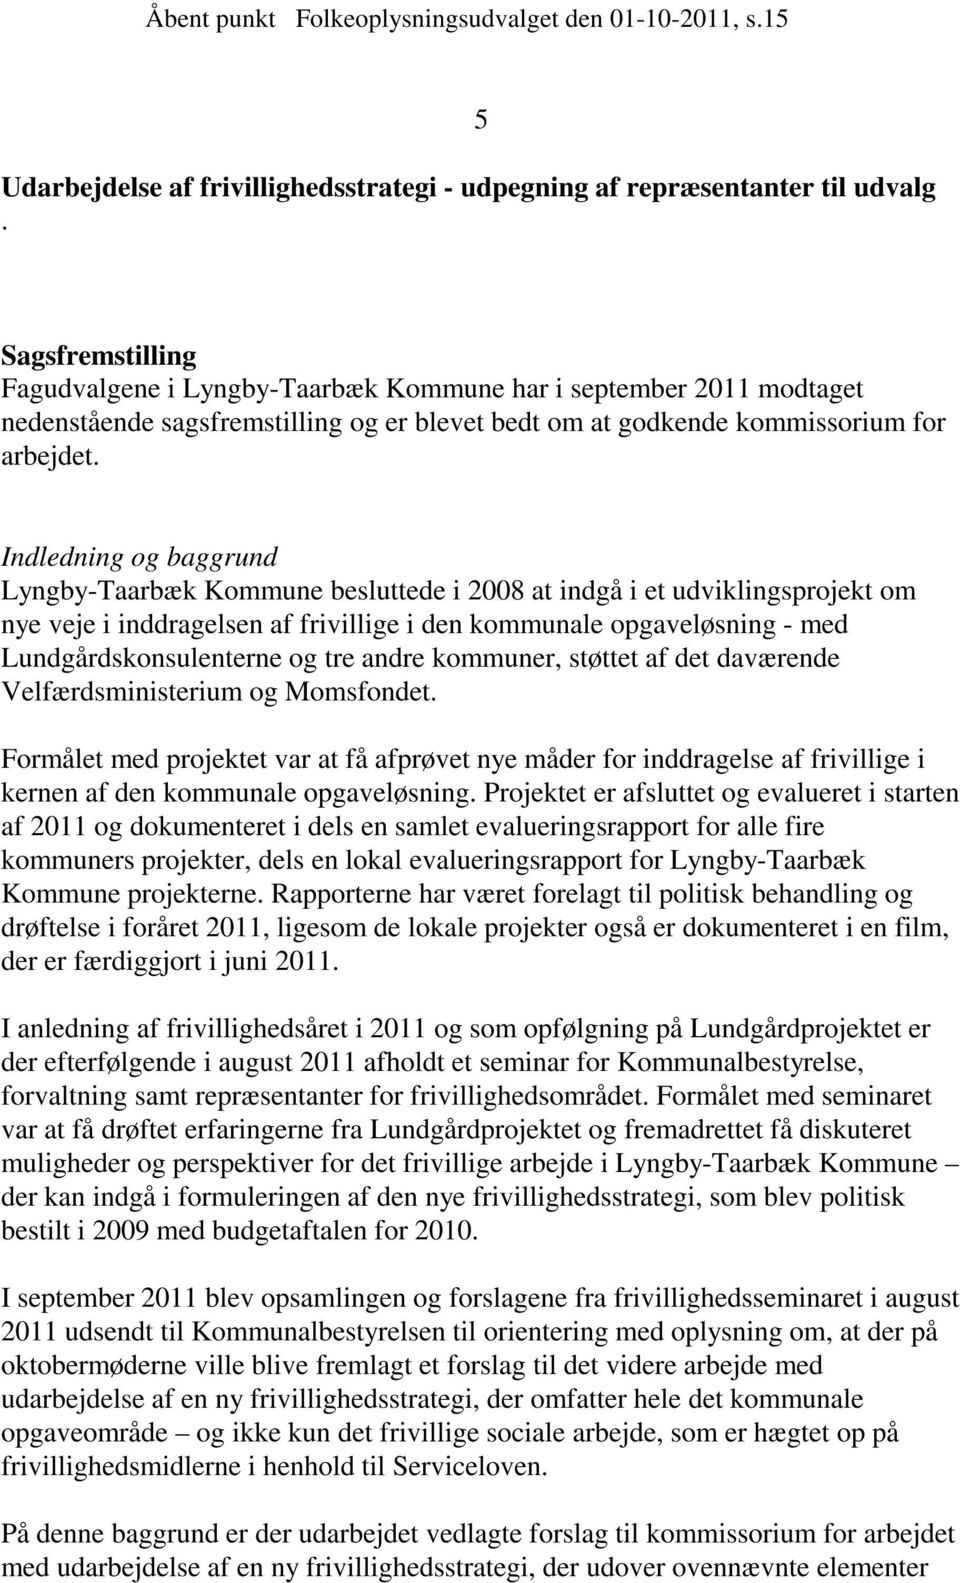 Indledning og baggrund Lyngby-Taarbæk Kommune besluttede i 2008 at indgå i et udviklingsprojekt om nye veje i inddragelsen af frivillige i den kommunale opgaveløsning - med Lundgårdskonsulenterne og